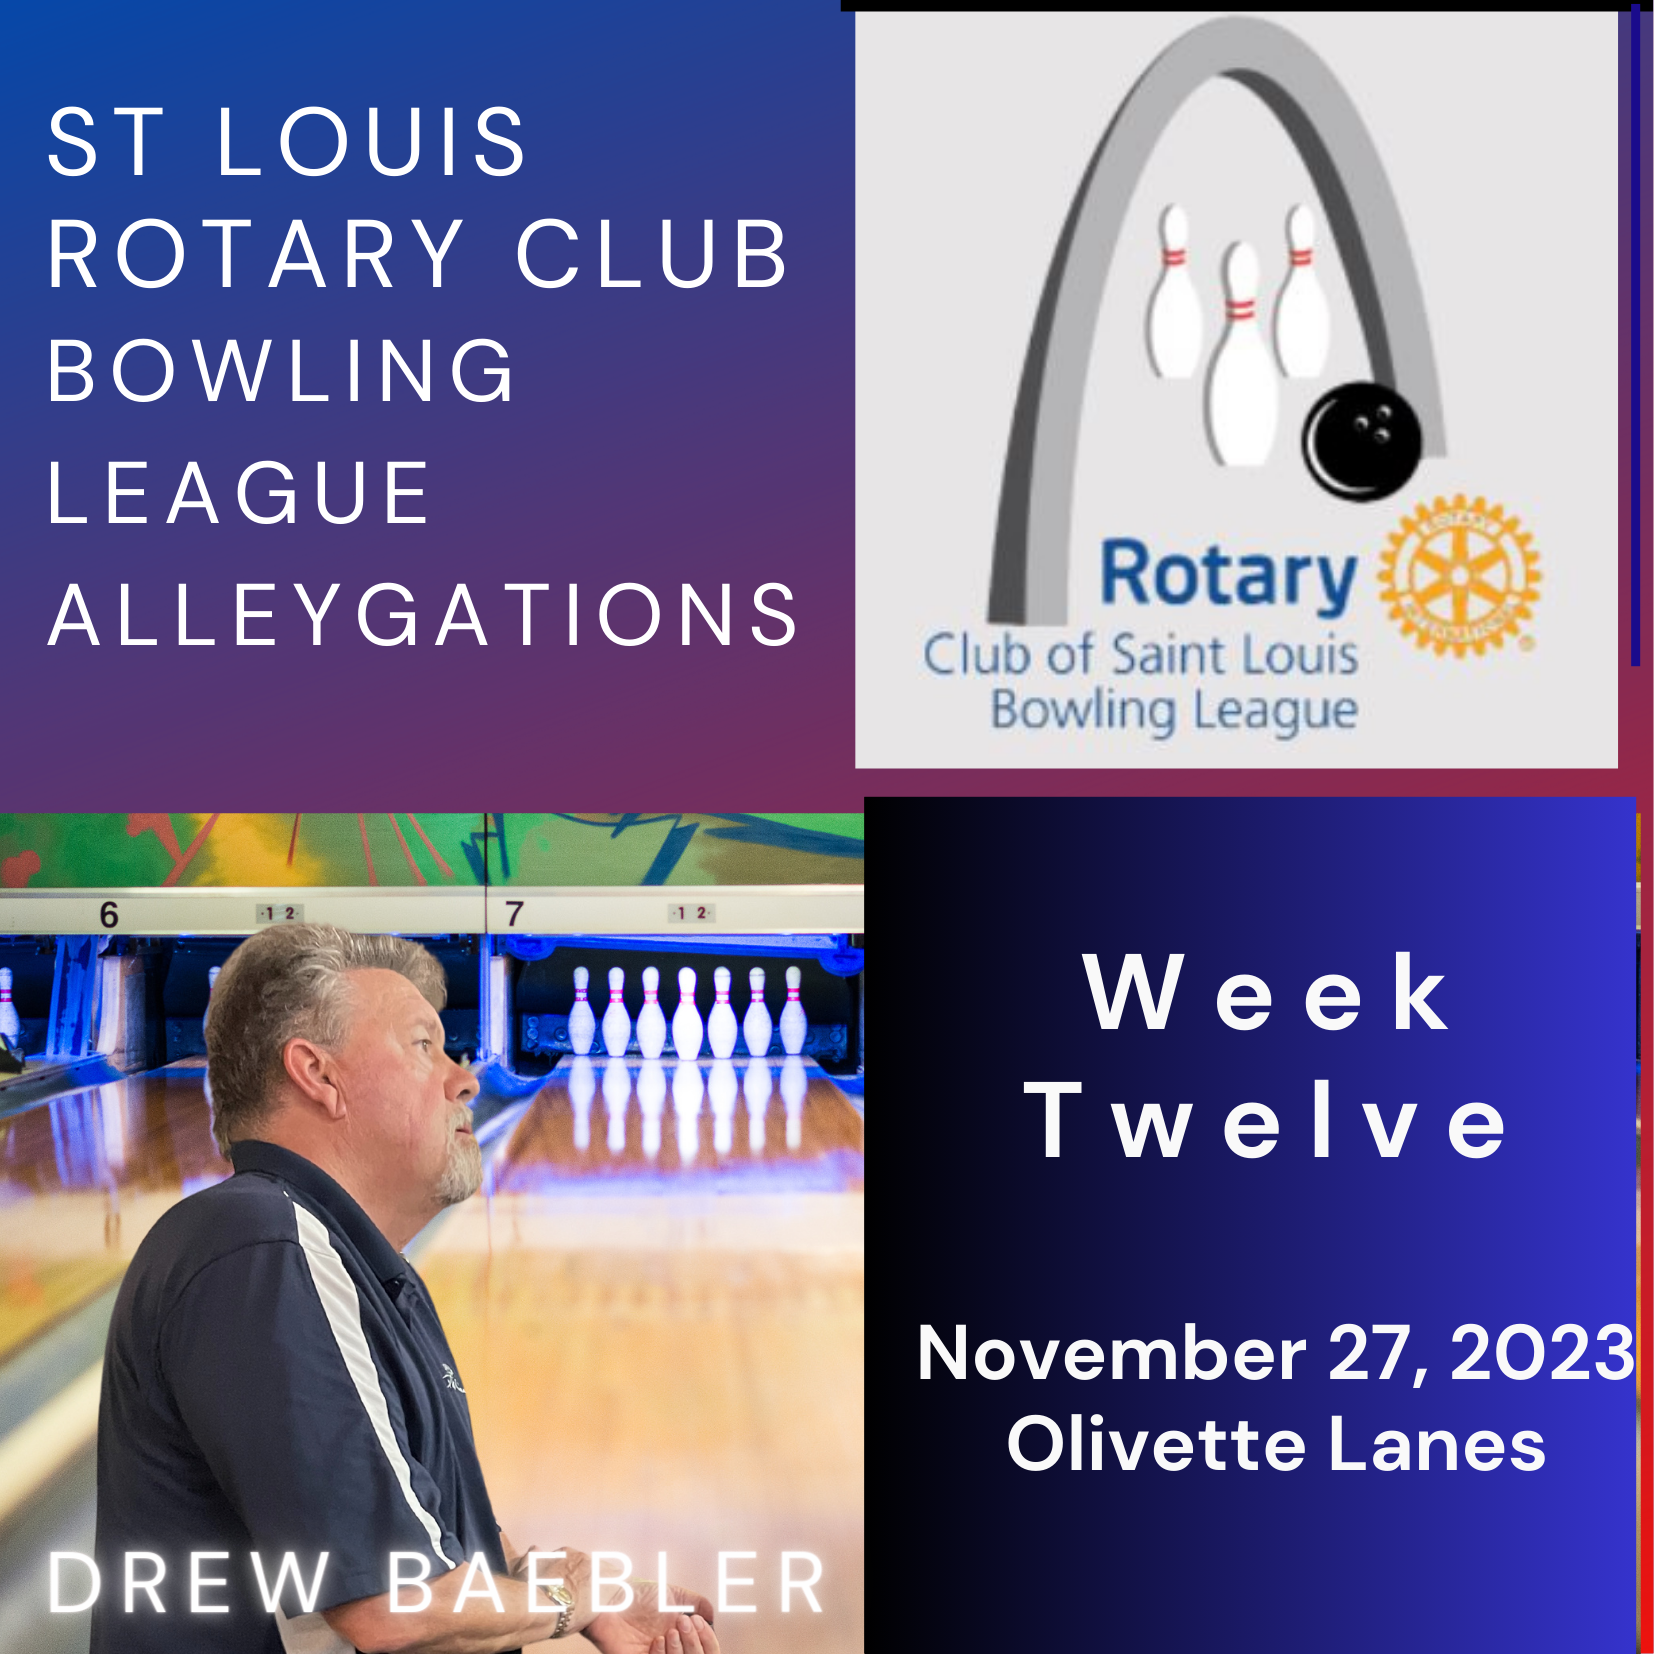 Week 12 Alleygations - Drew Baebler 11-27-23